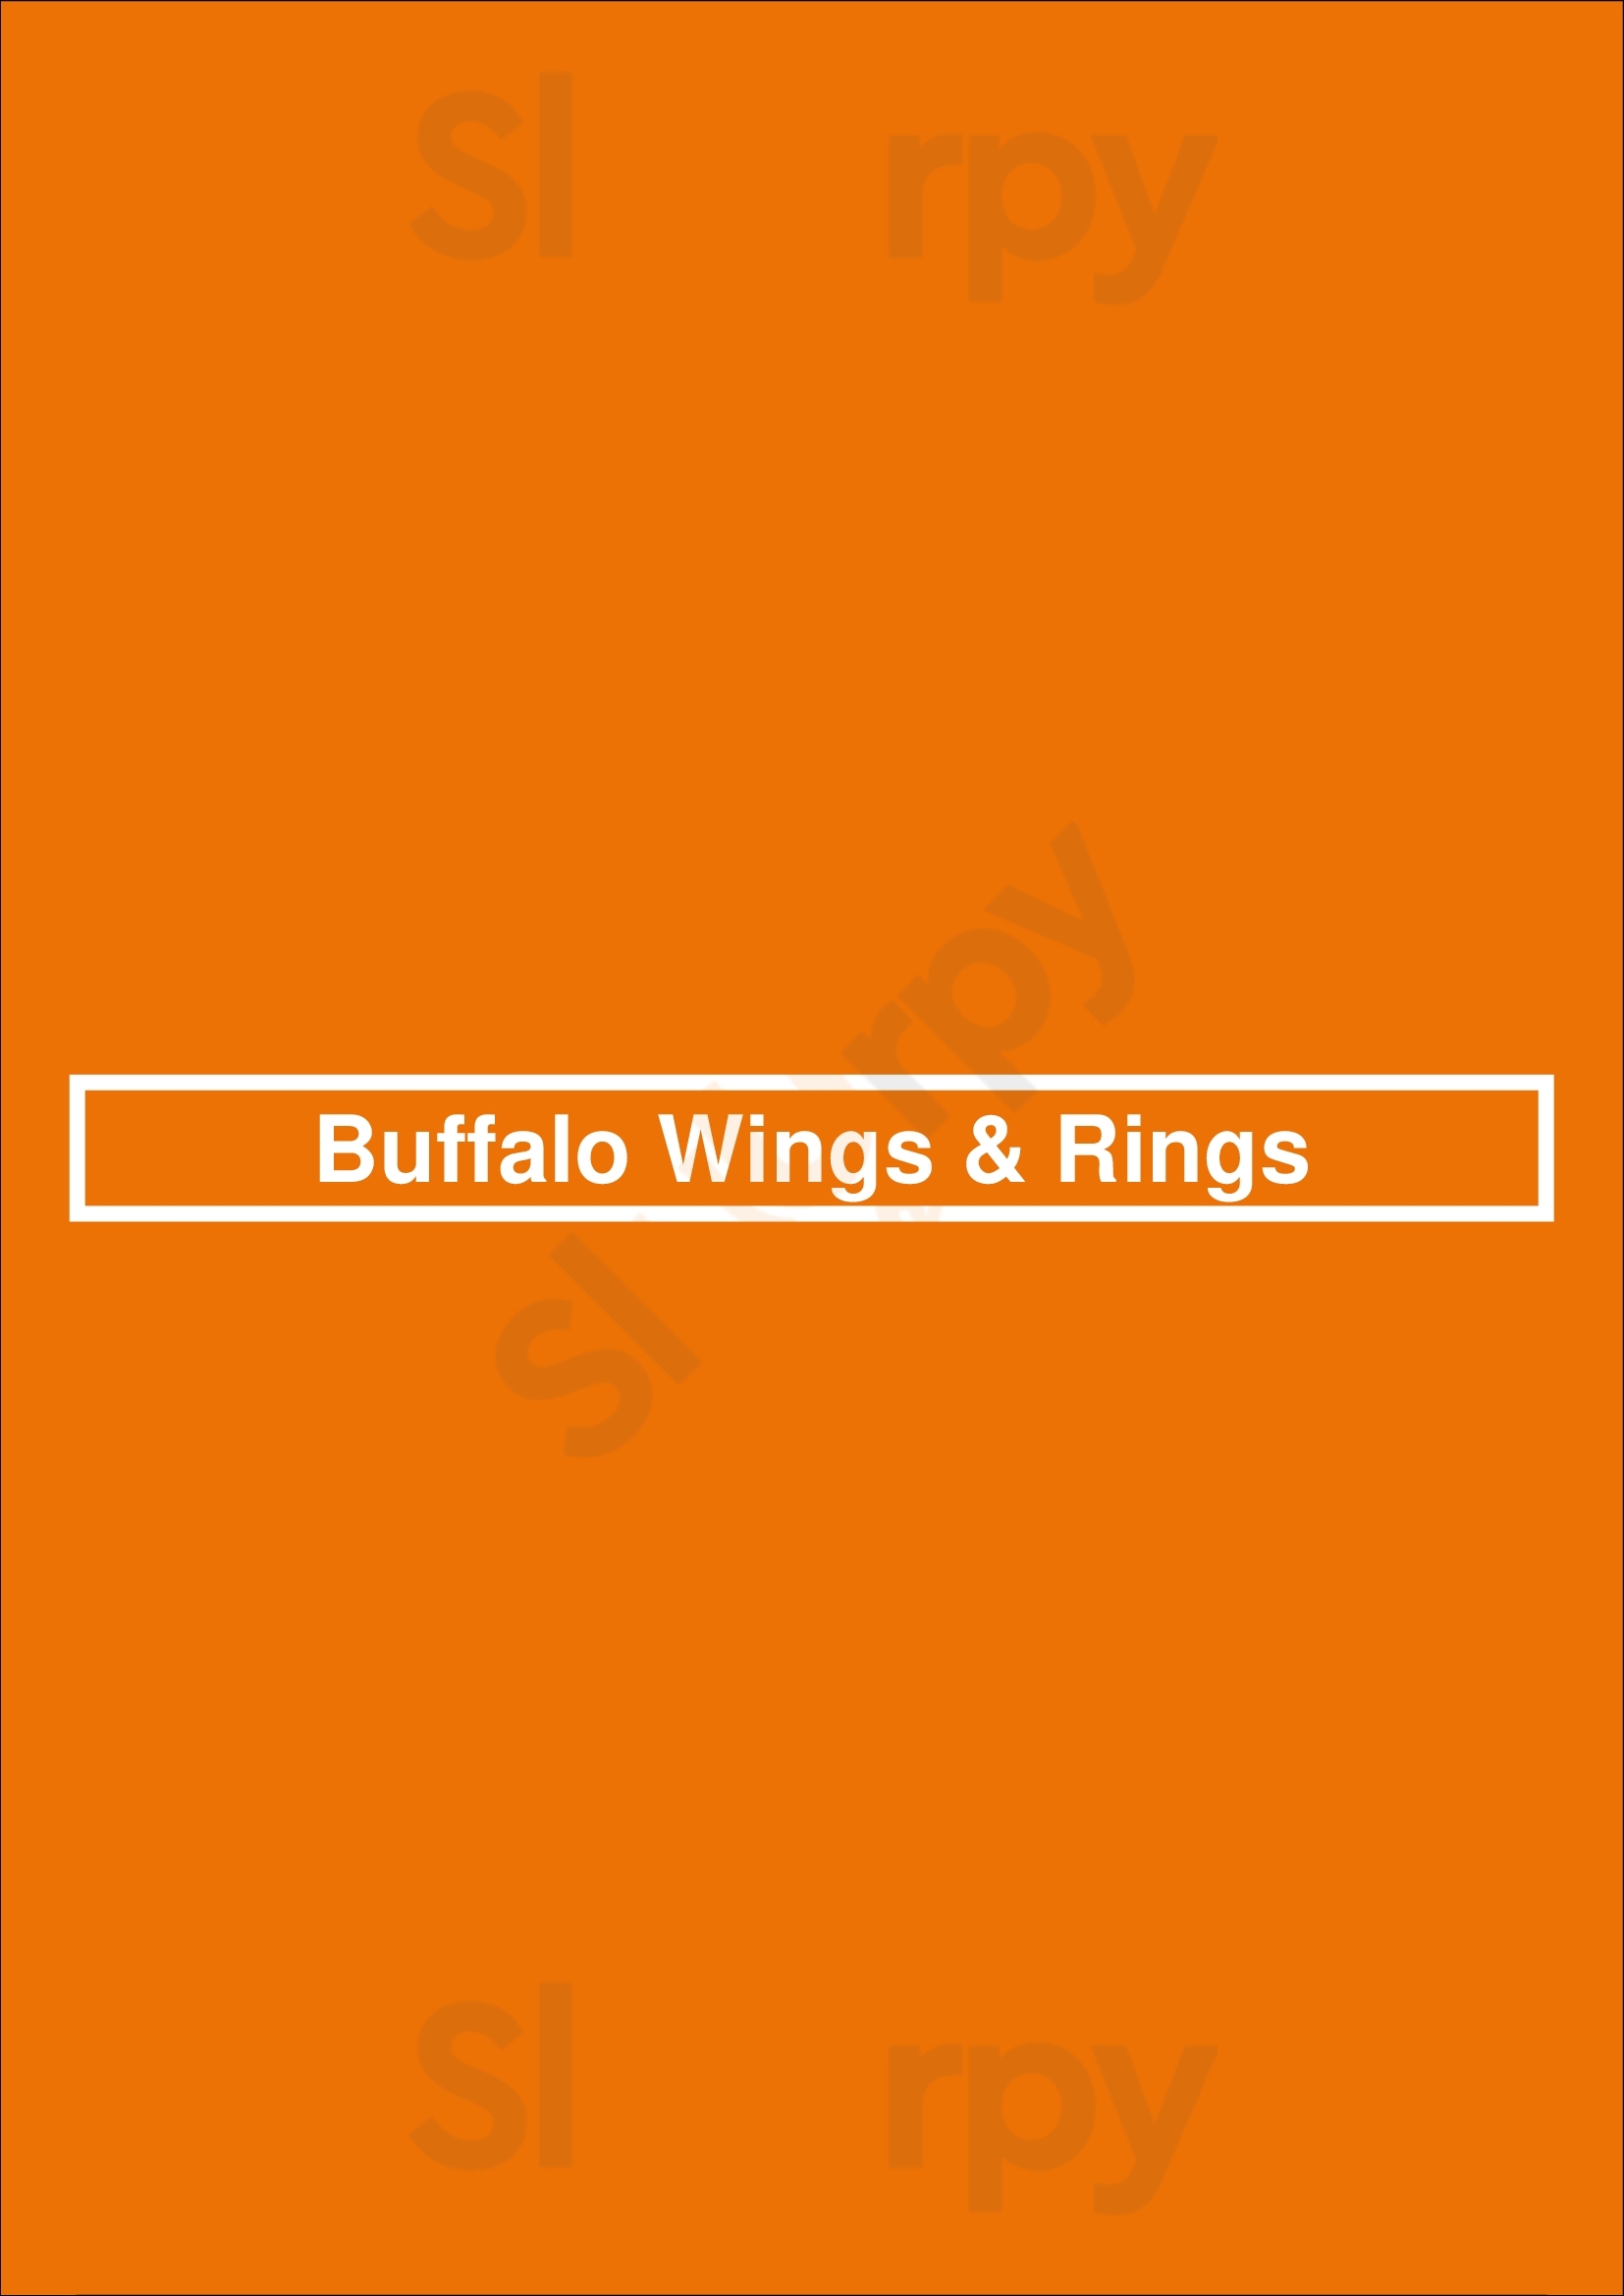 Wings And Rings Charlotte Menu - 1